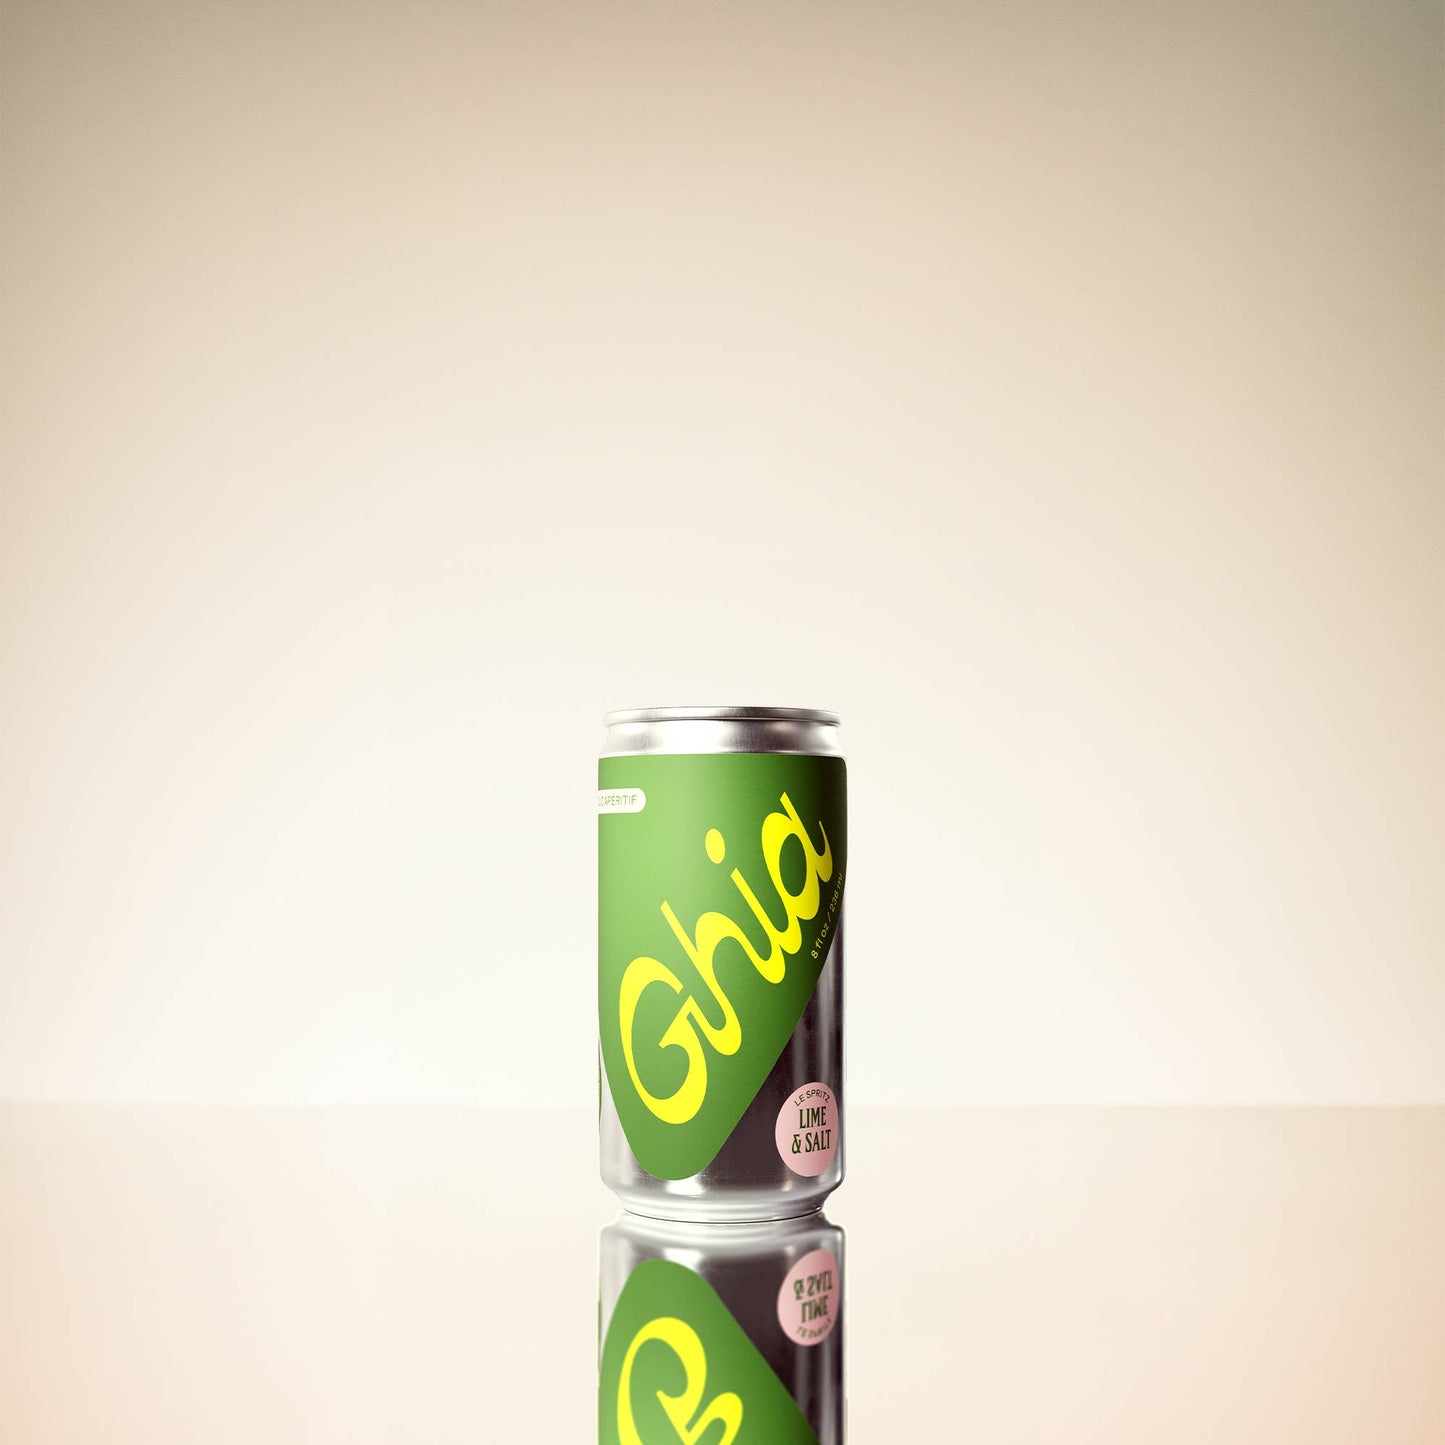 Le Spritz- Ghia Lime + Salt - Single can